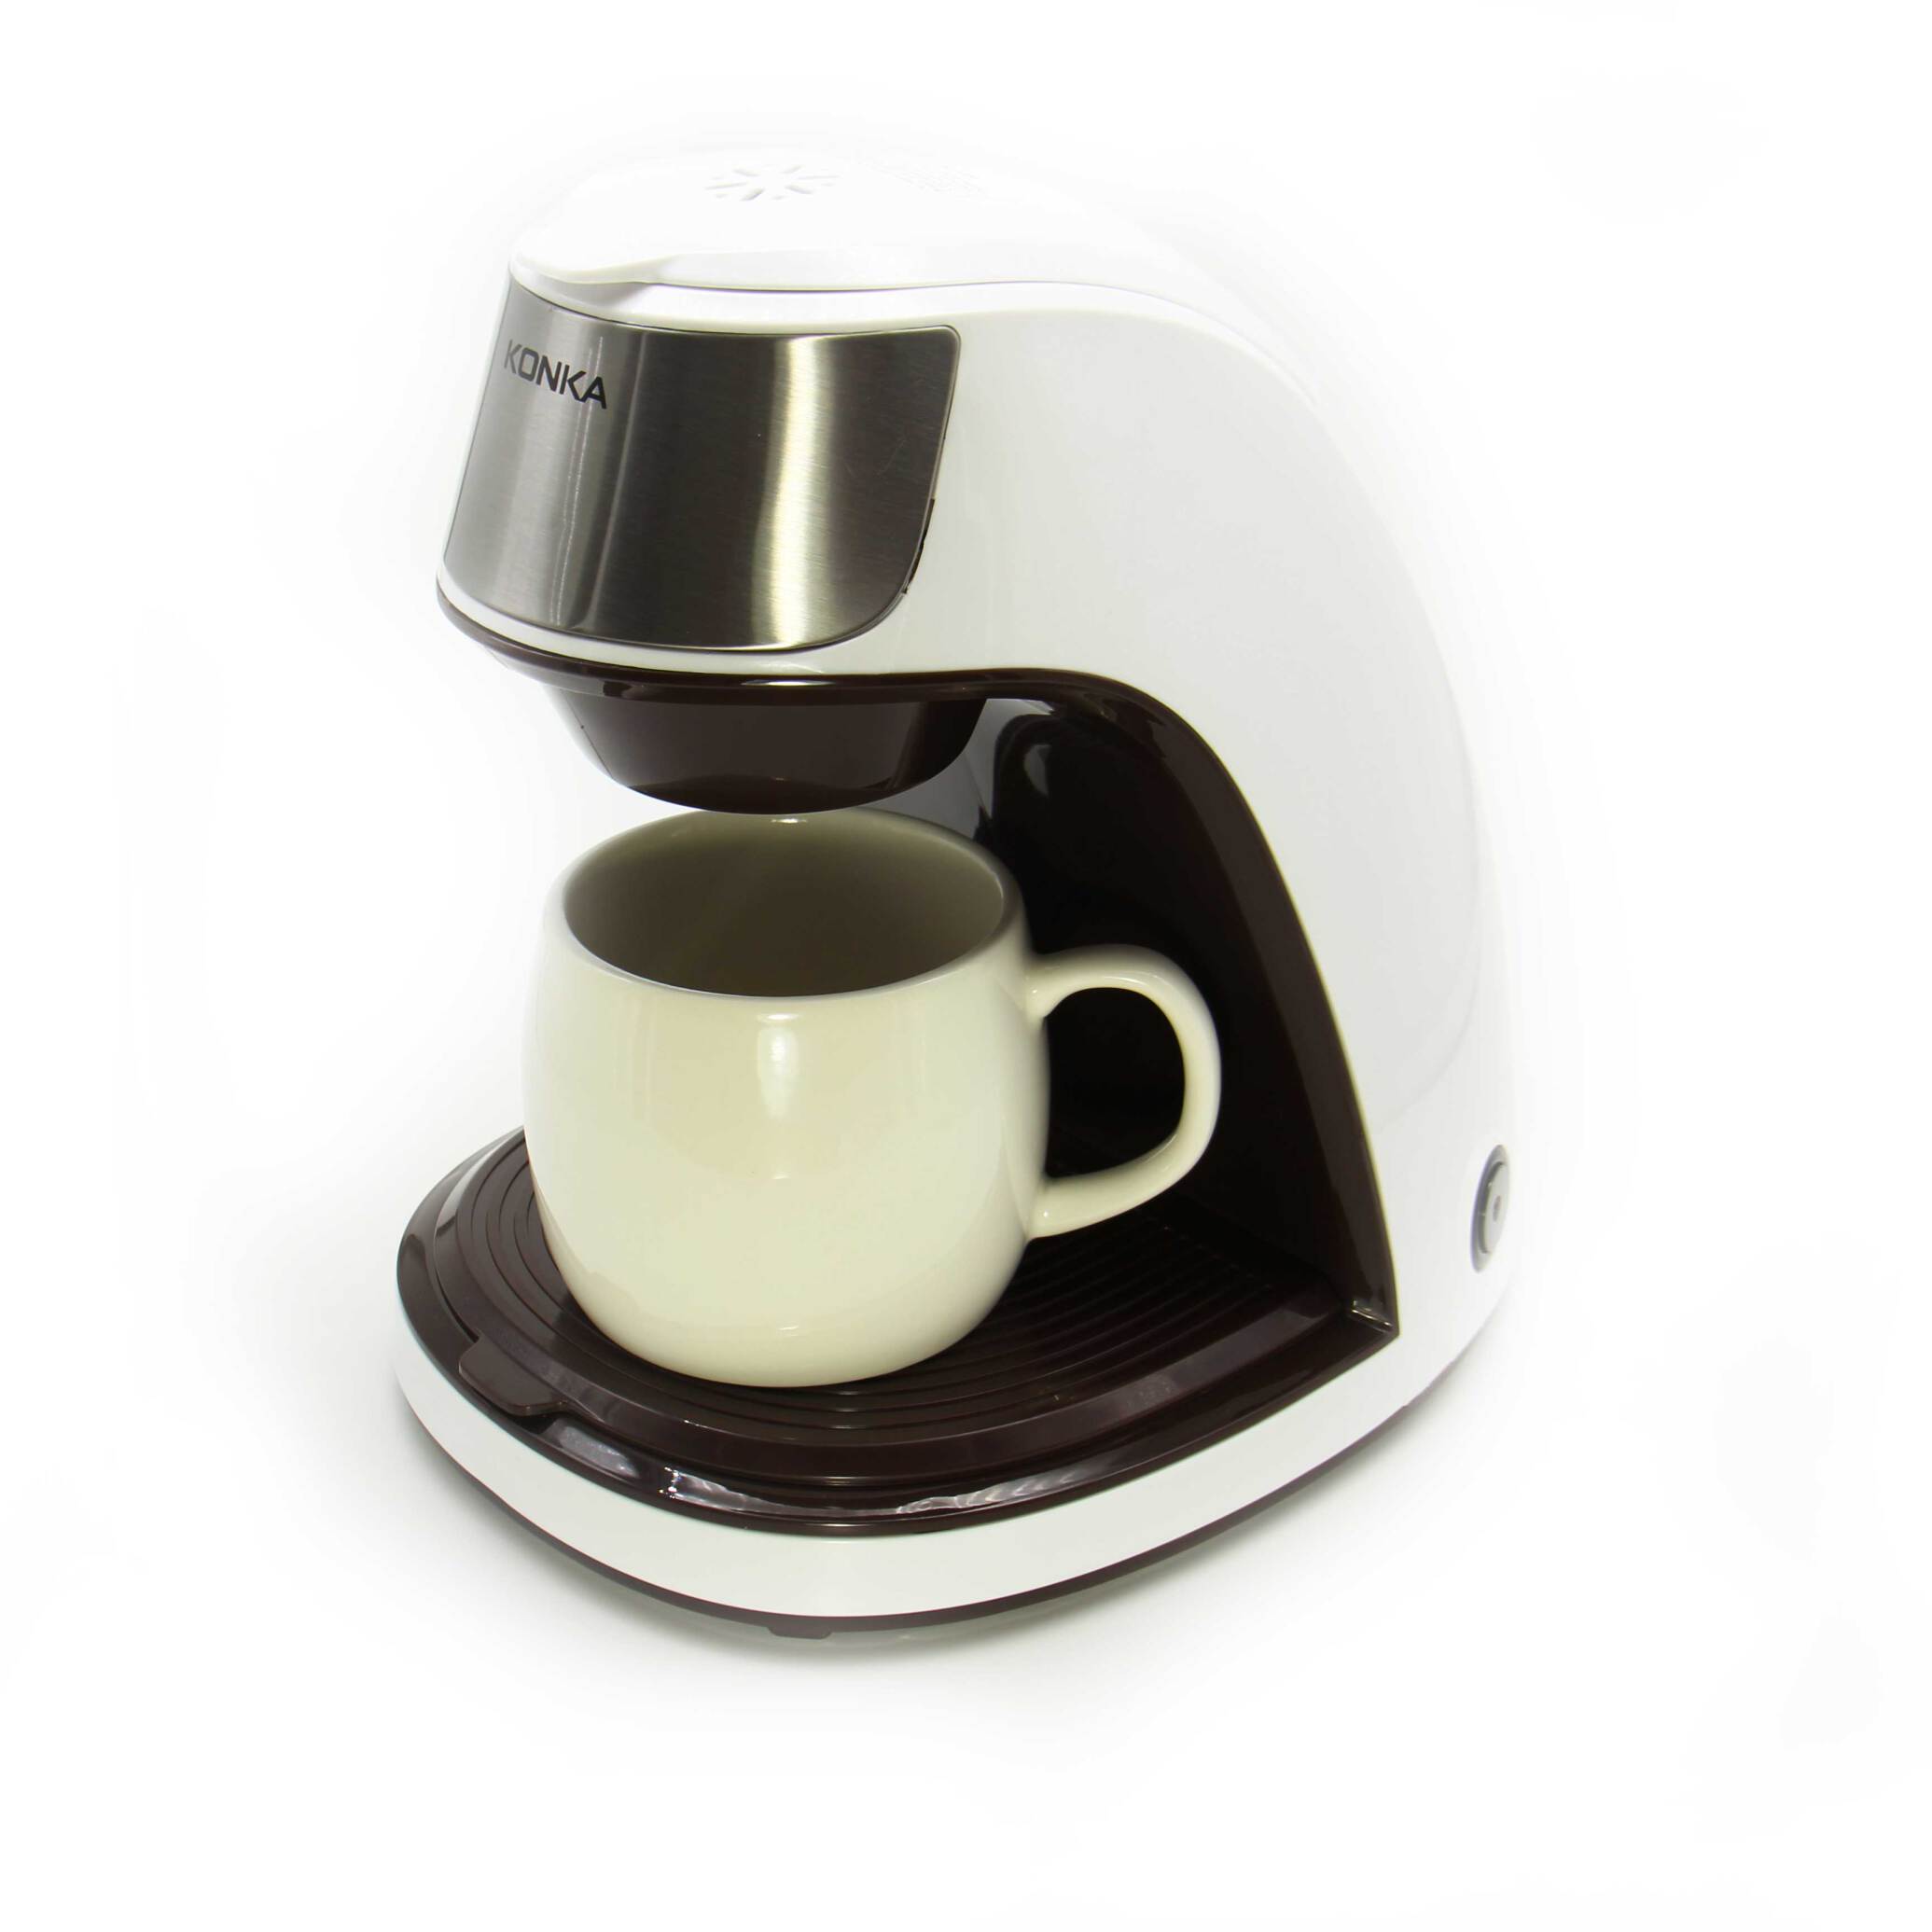  دستگاه قهوه ساز konka + به همراه ماگ | بلک کافی | فروشگاه قهوه و دستگاه قهوه | دستگاه قهوه ساز کوچک | قهوه ساز خانگی 